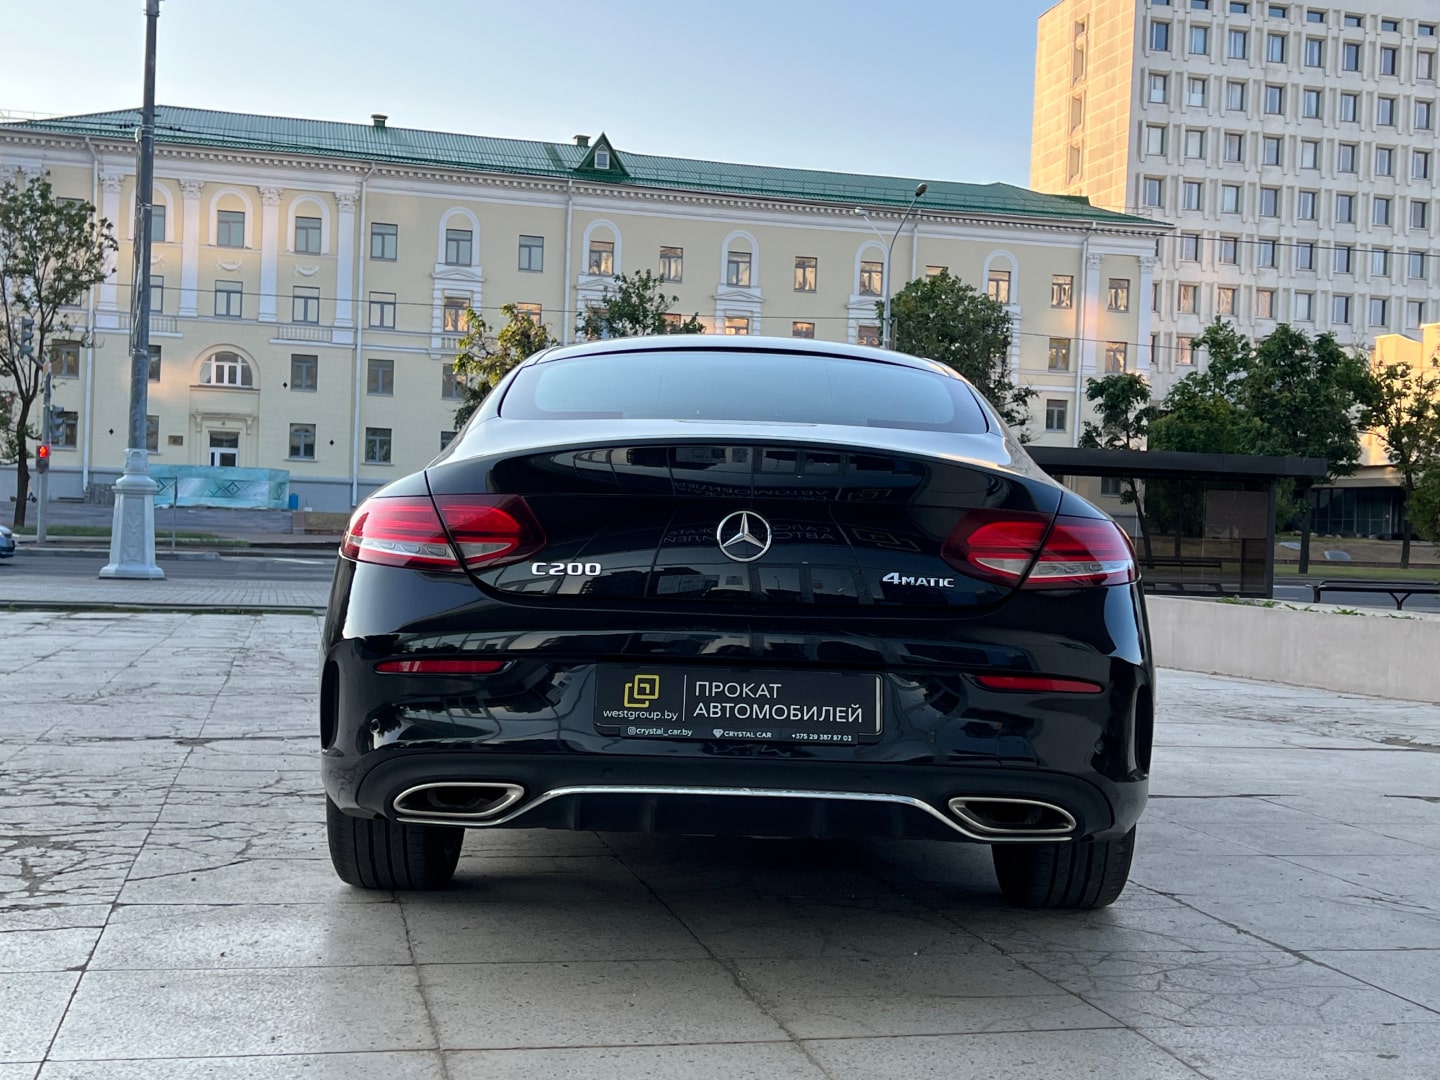 Аренда  Mercedes-benz C-class Coupe W205 C200 4MATIC Premium  3 класса 2018 года в городе Минск от 155 $/сутки,  двигатель: Бензин , объем 2.0 литров, КАСКО (Мультидрайв), без водителя, вид 4 - West Group